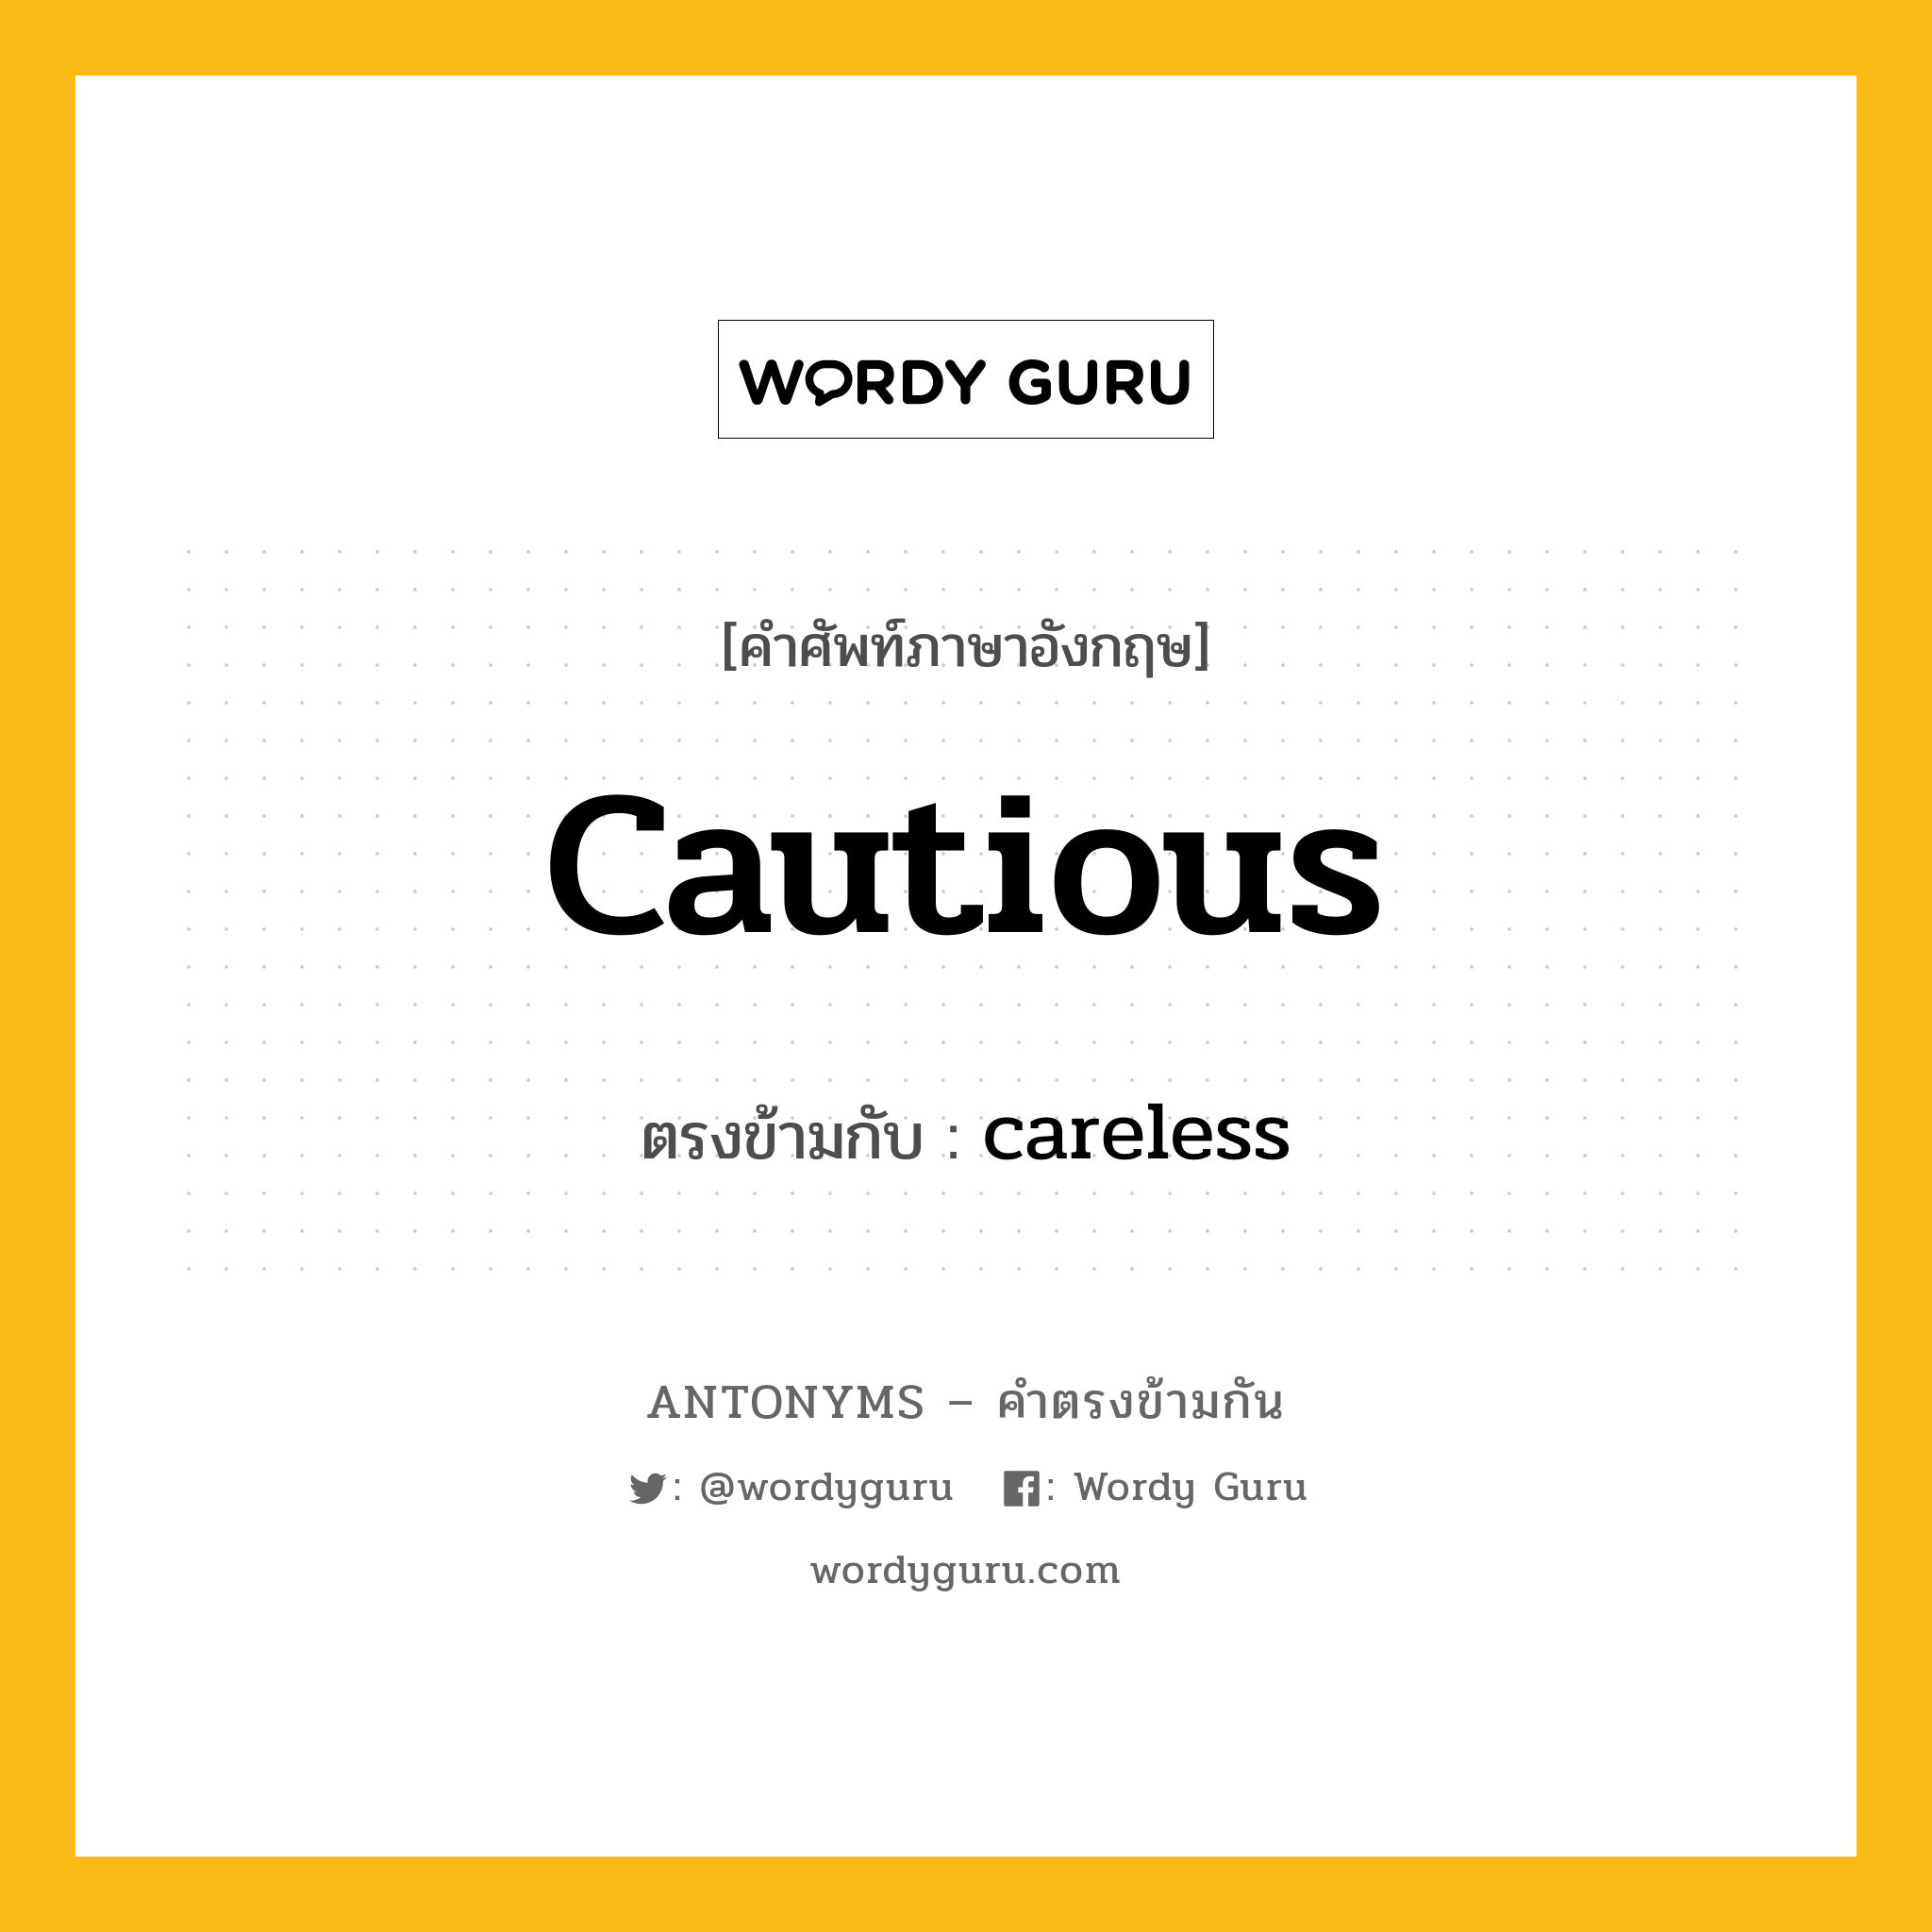 cautious เป็นคำตรงข้ามกับคำไหนบ้าง?, คำศัพท์ภาษาอังกฤษ cautious ตรงข้ามกับ careless หมวด careless